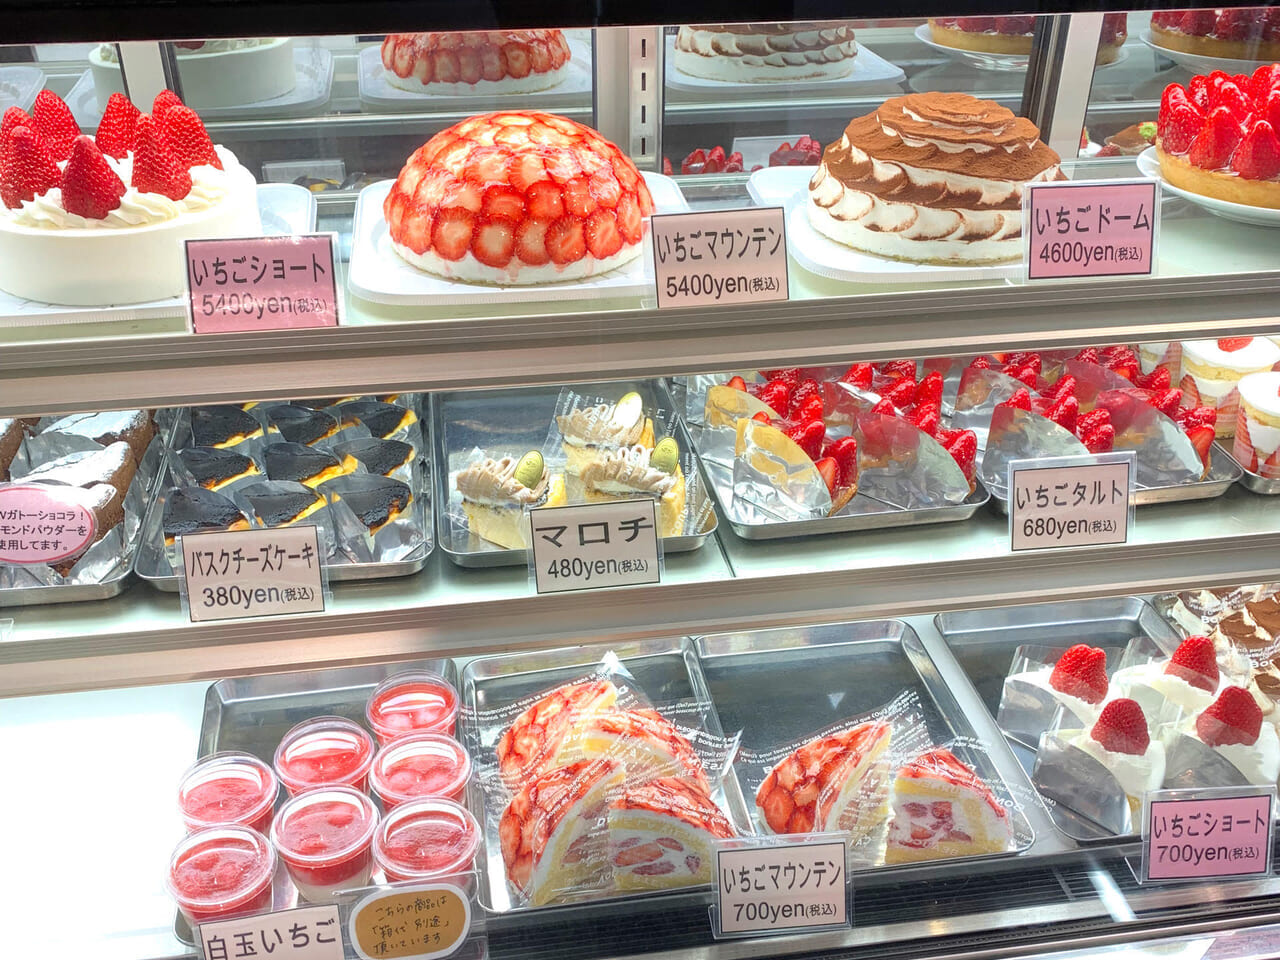 イオンモール新都市内にあるSAI&Co. (サイコー)では美味しいデザートや地元の食材を購入できます!